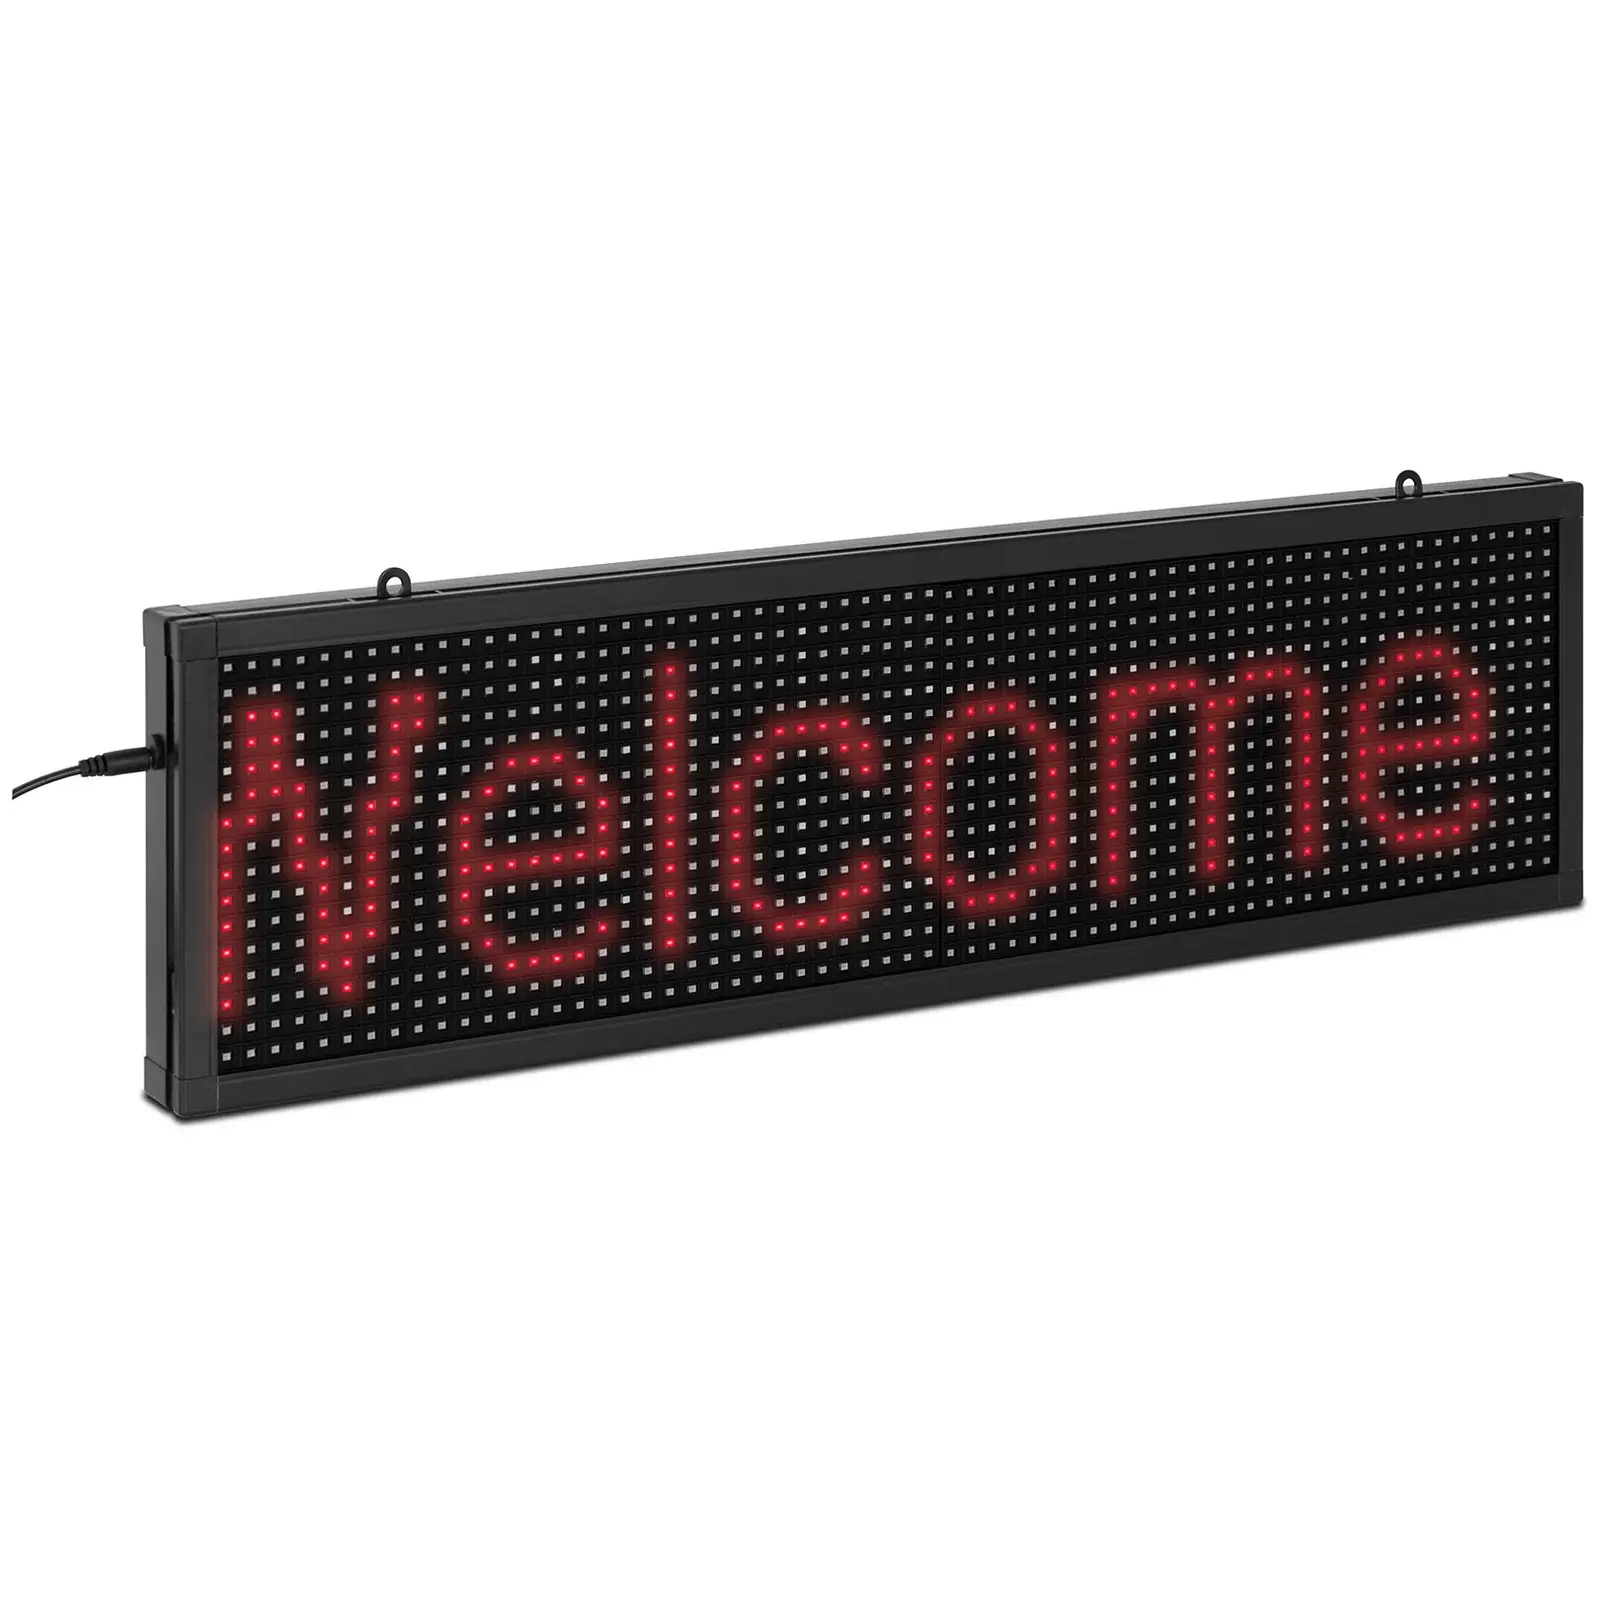 Panneau publicitaire LED - 64 x 16 LED rouge - 67 x 19 cm - Programmable via iOS / Android